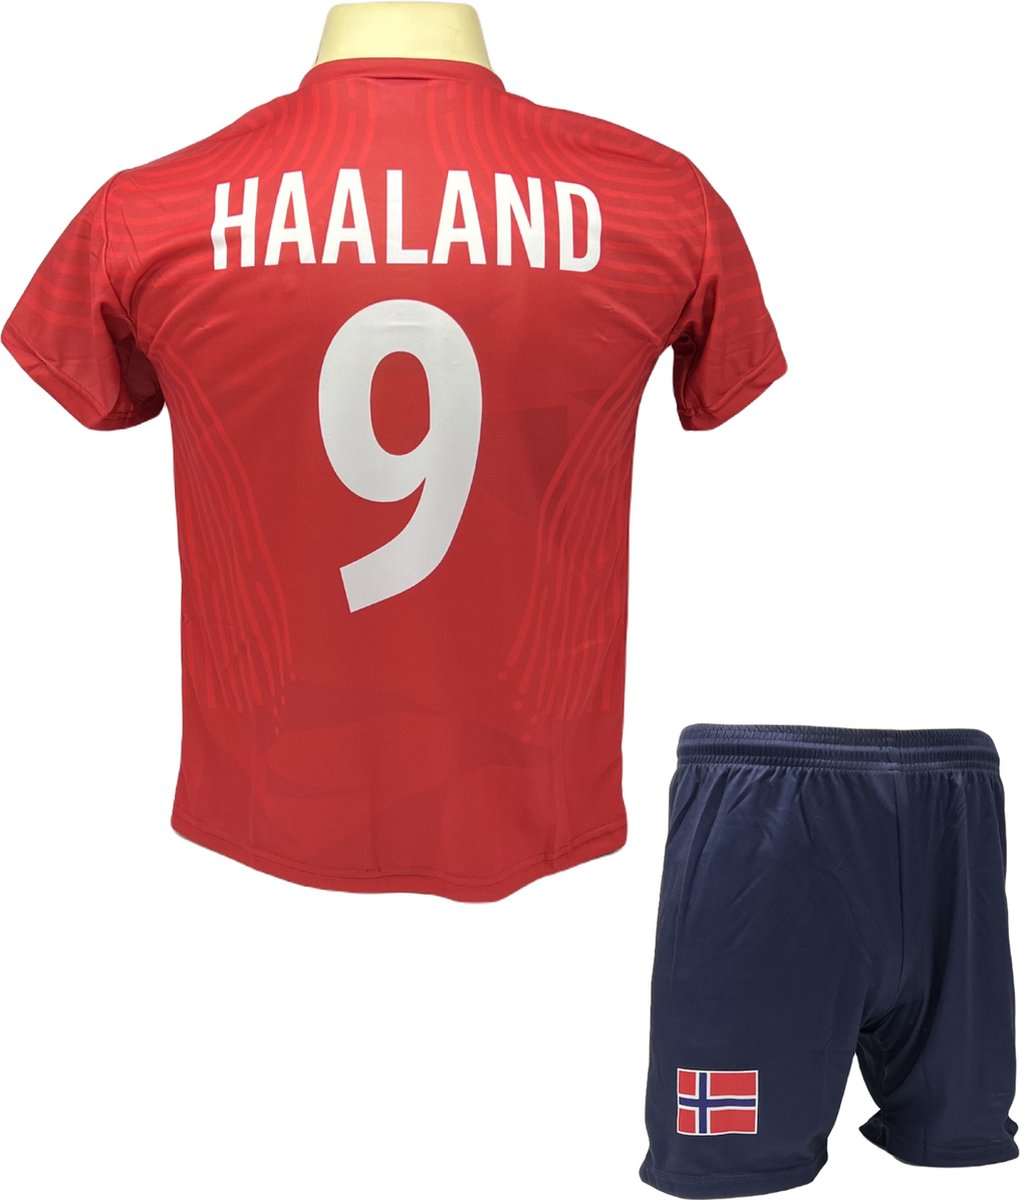 Haaland Voetbalshirt en Broekje Voetbaltenue Noorwegen - Maat 128